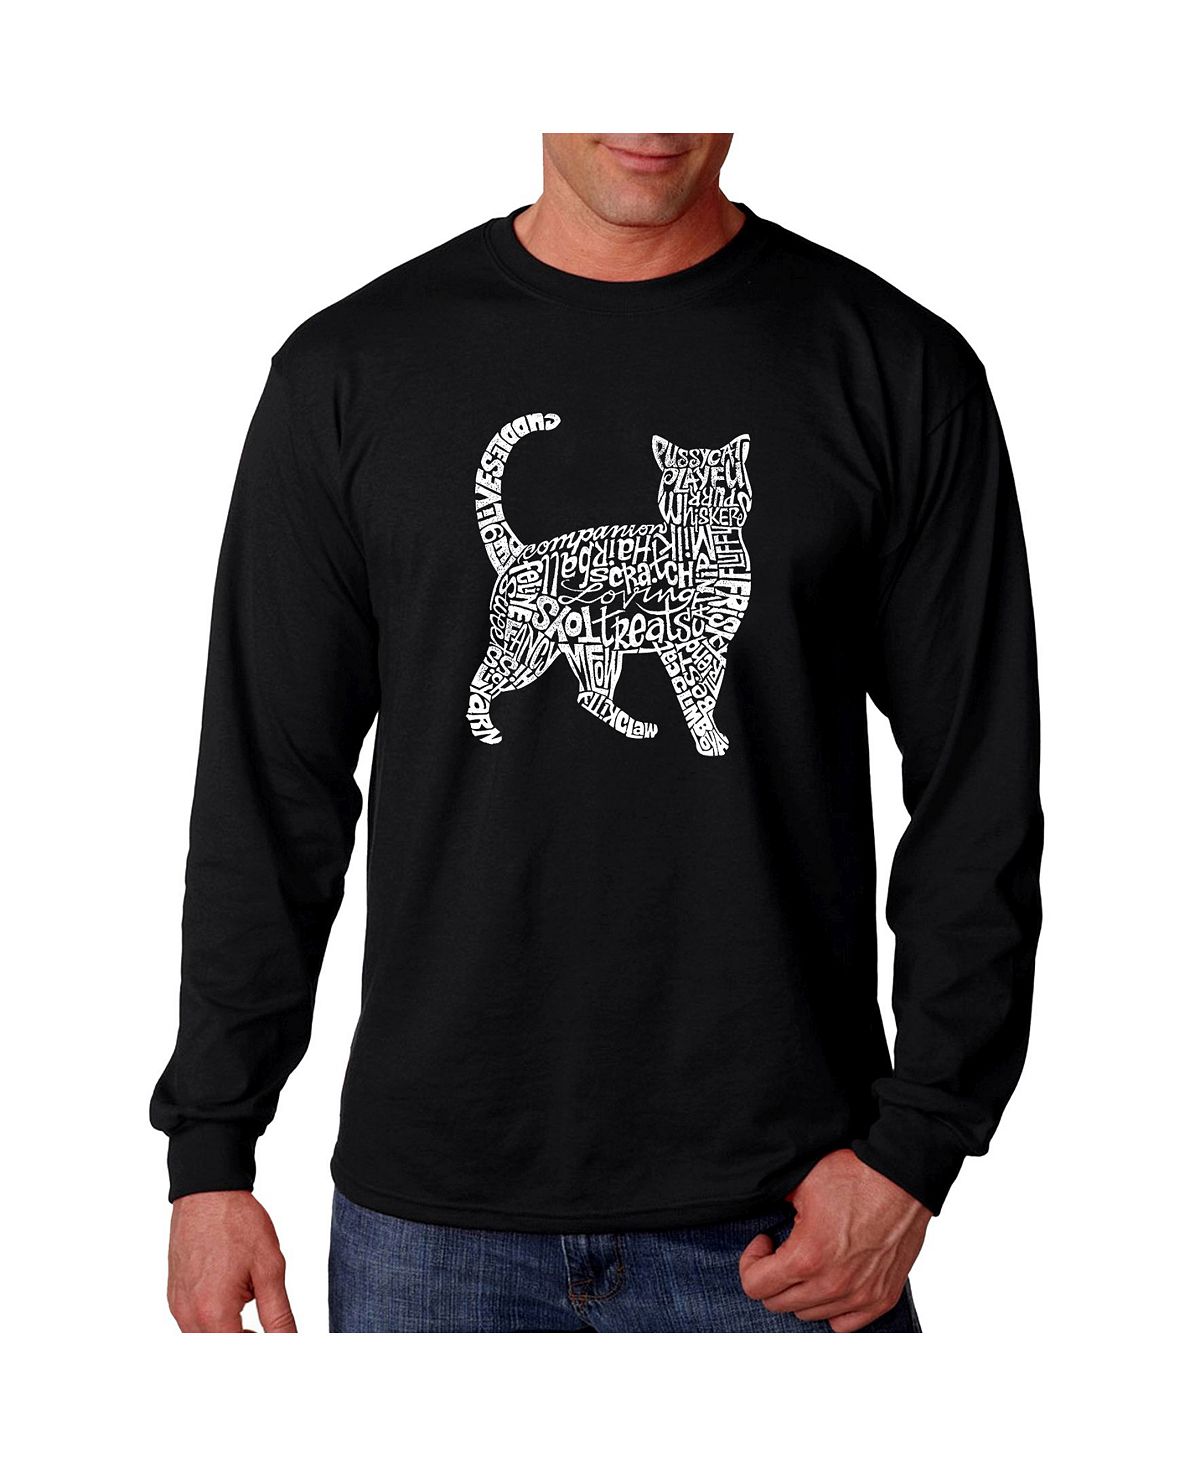 Мужская футболка с длинным рукавом word art - кошка LA Pop Art, черный